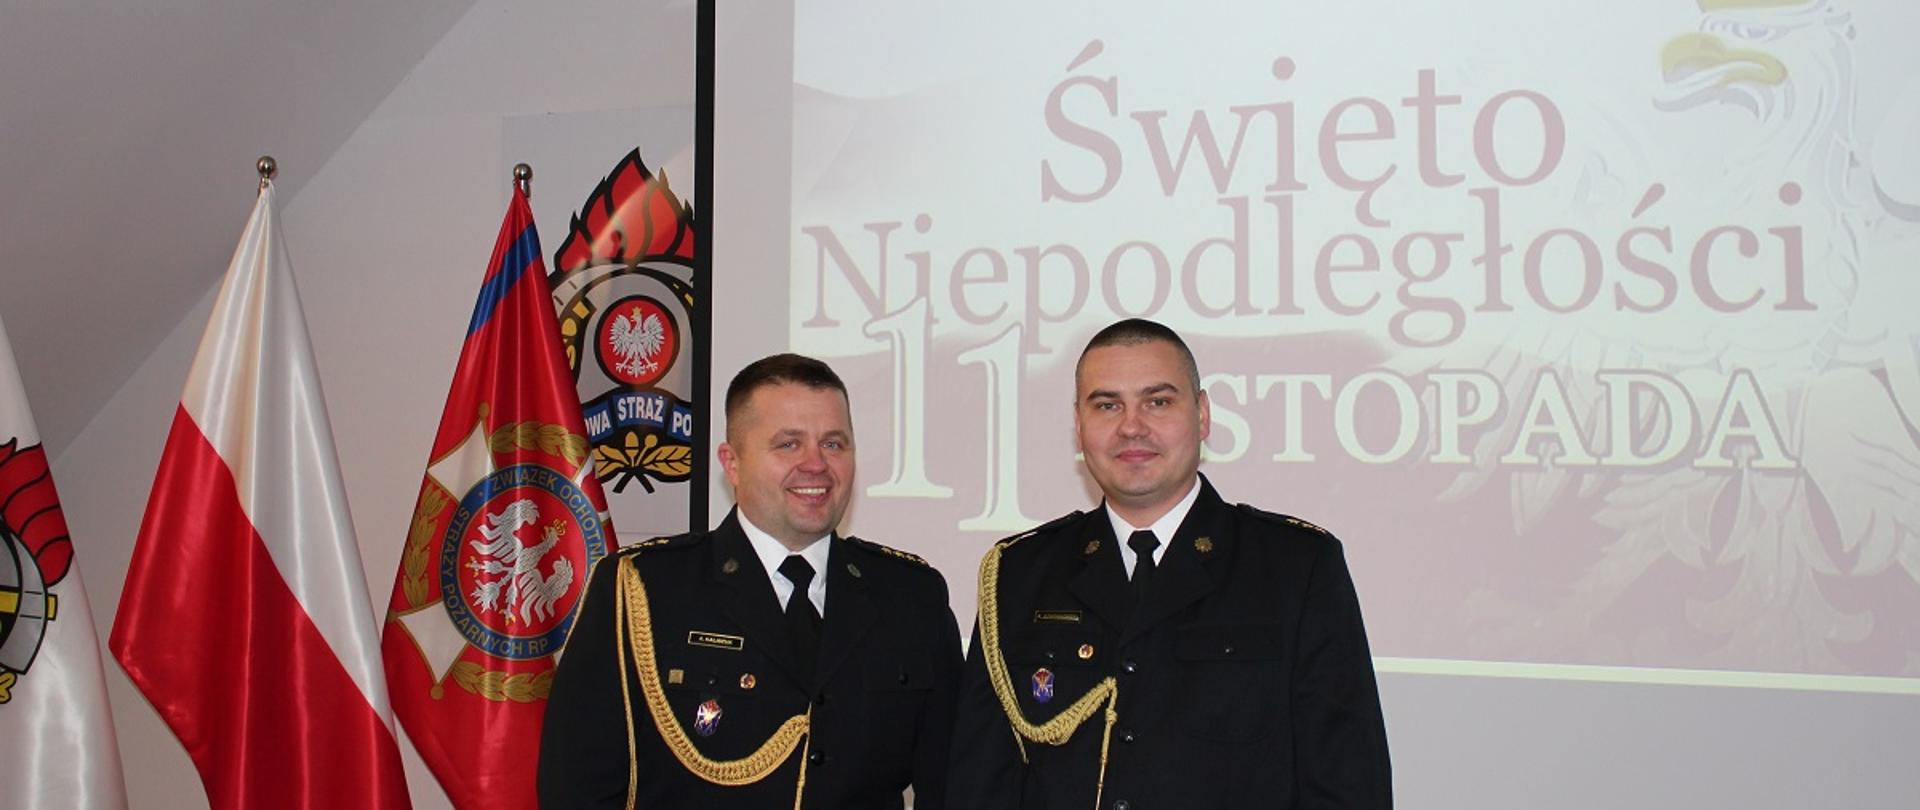 Na zdjęciu dwóch strażaków w mundurach galowych. Z lewej strony flagi. W tle napis Święto niepodległości 11 listopada.